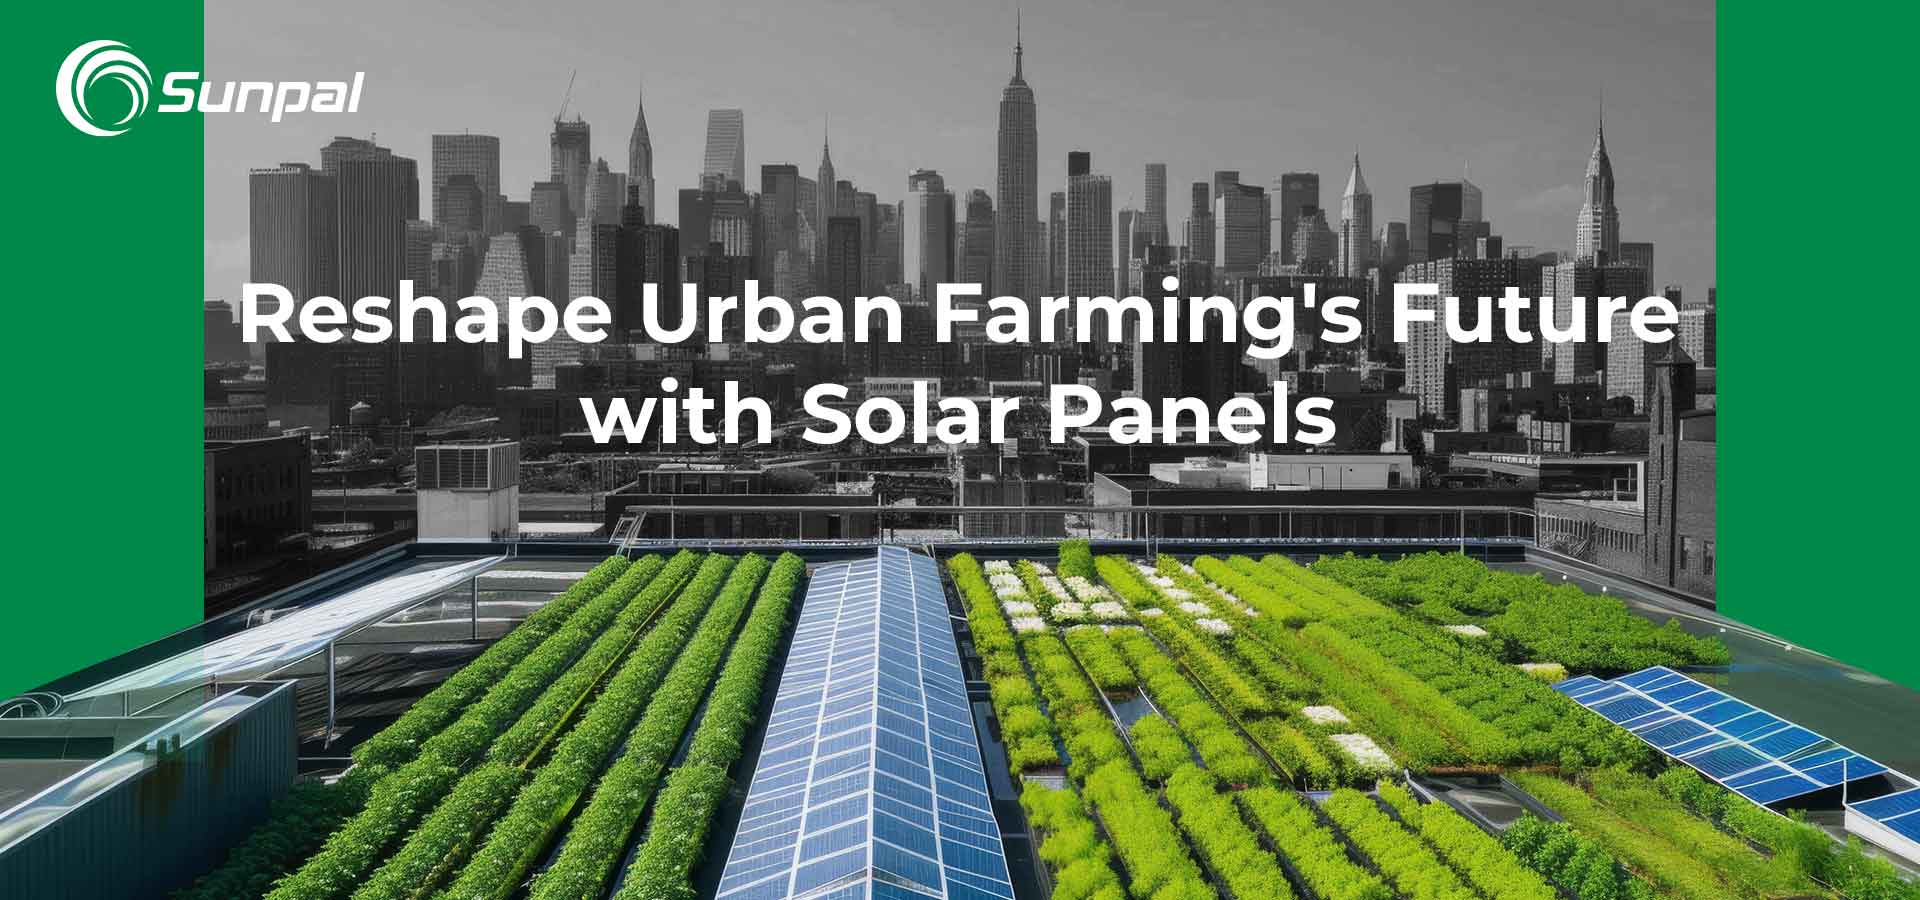 Tejados solares: remodelando el futuro de la agricultura urbana